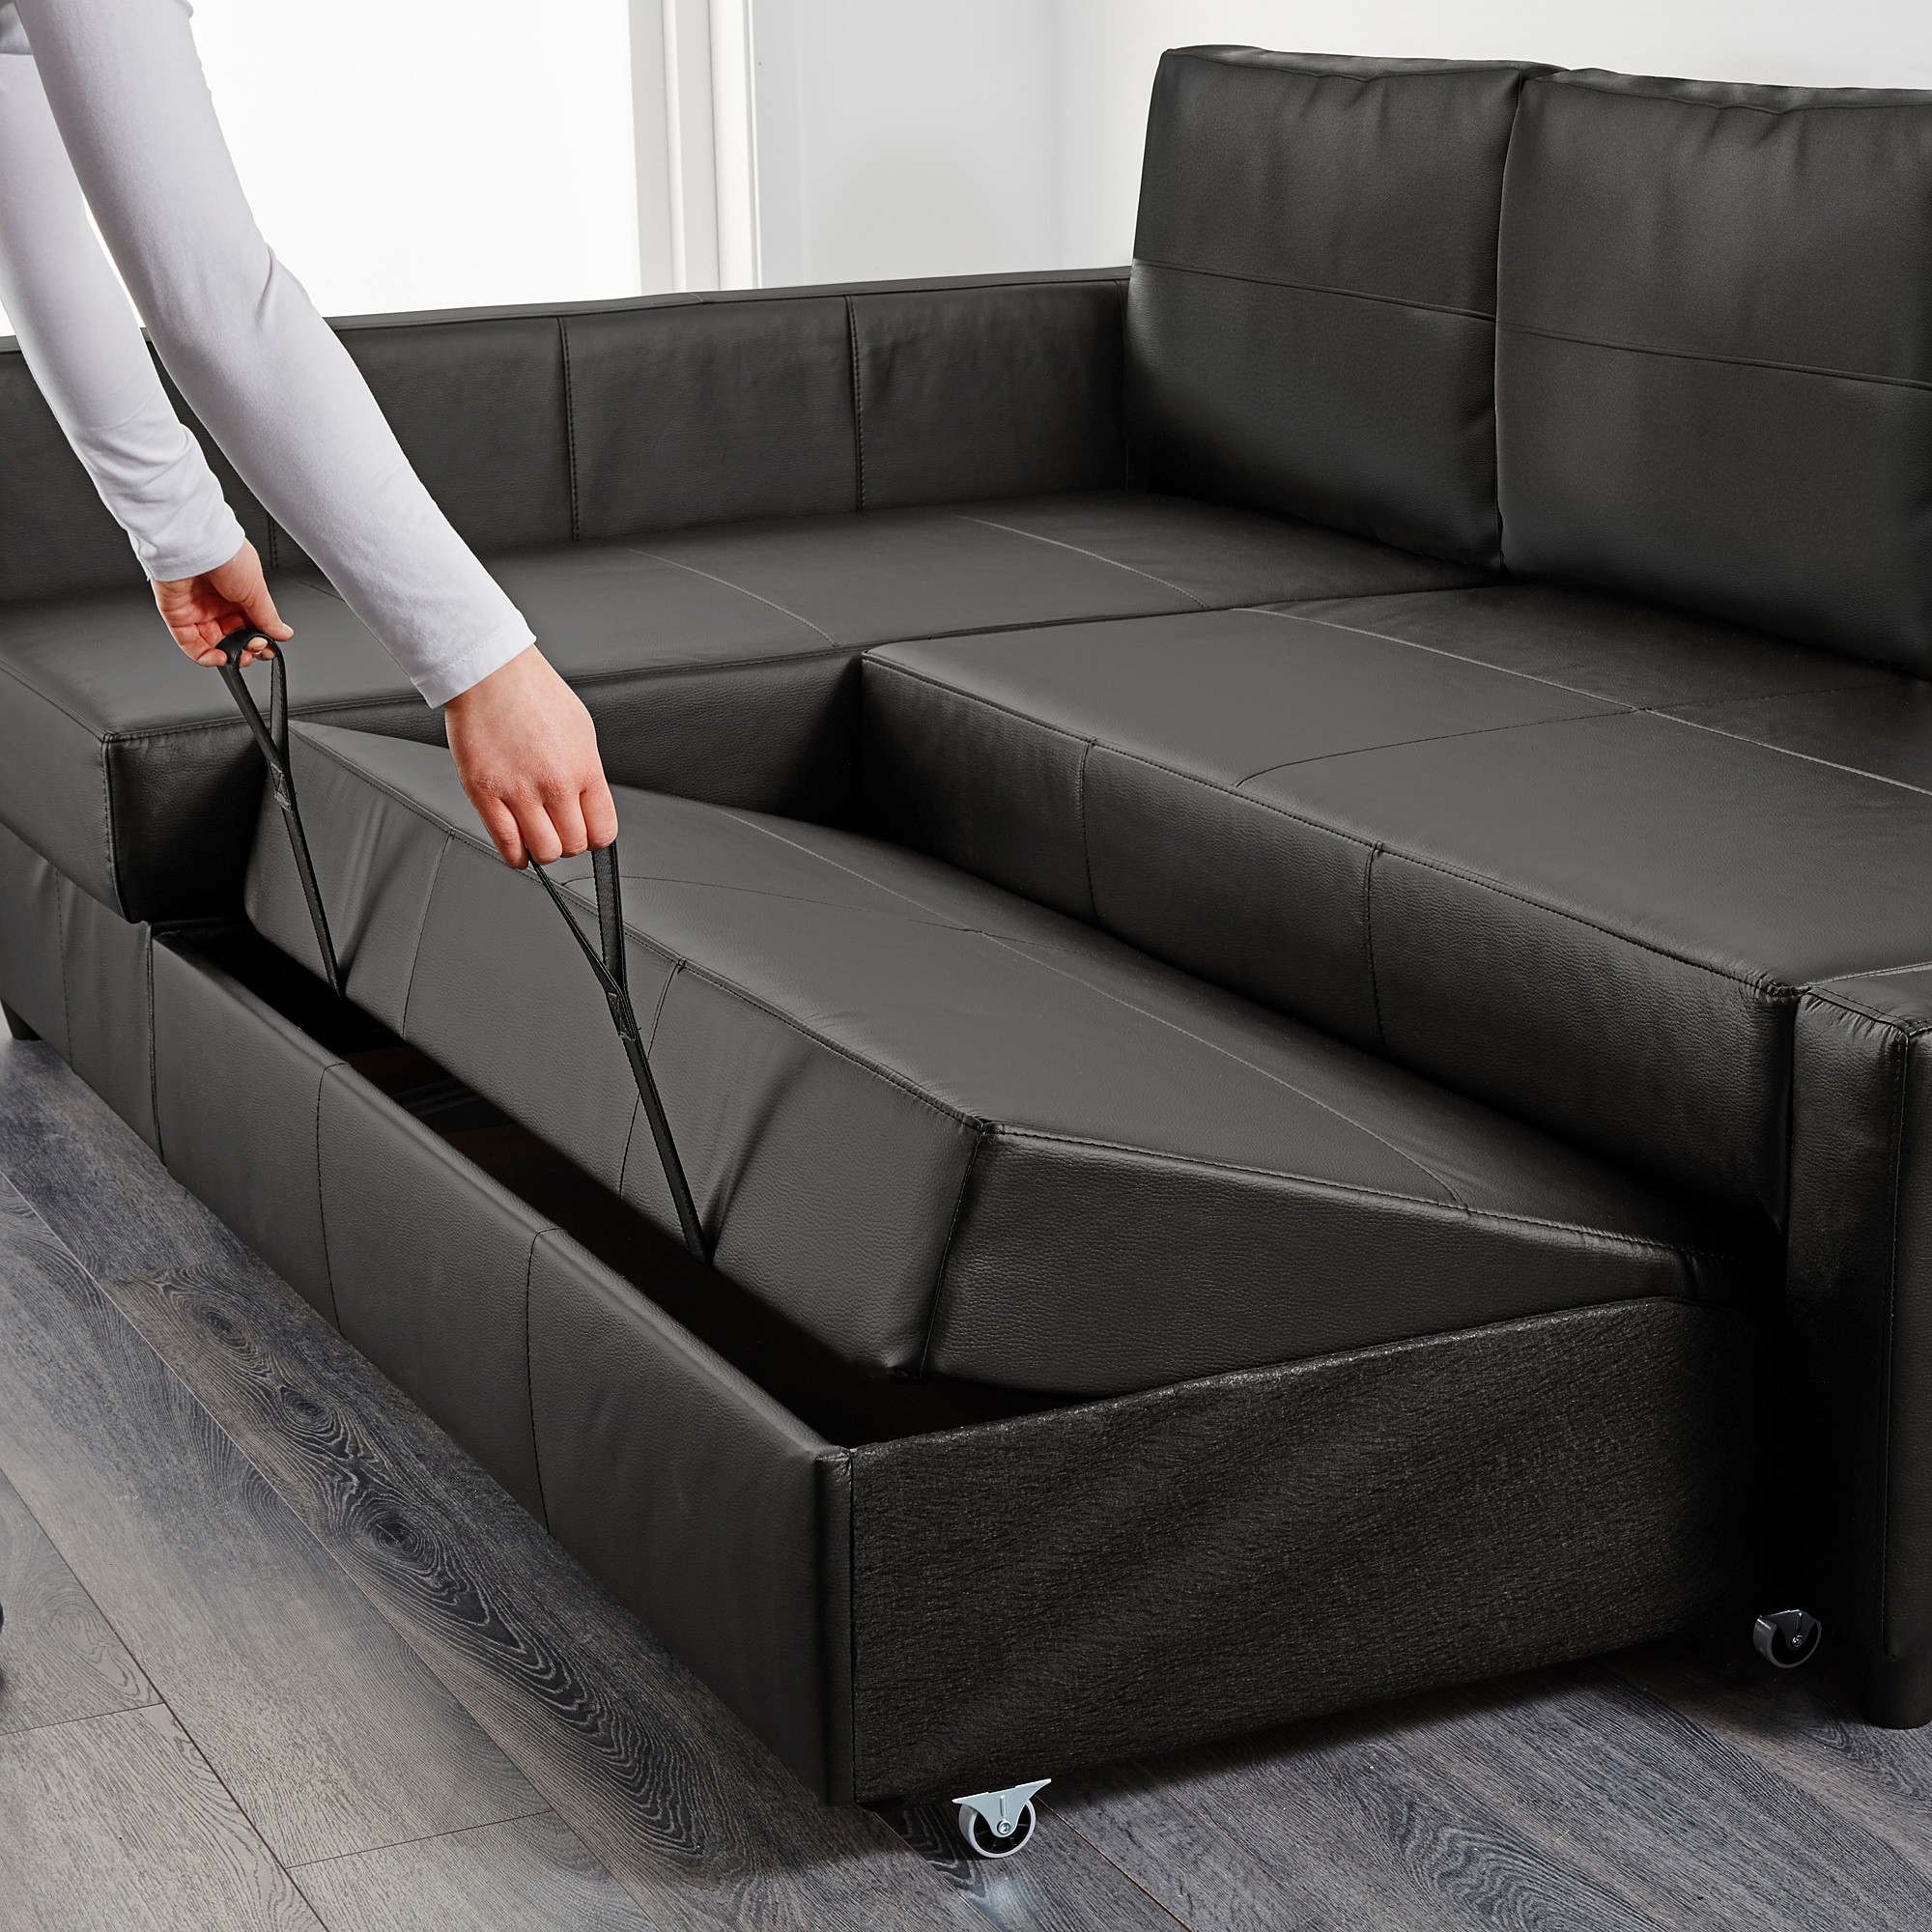 FRIHETEN corner sofa-bed with storage